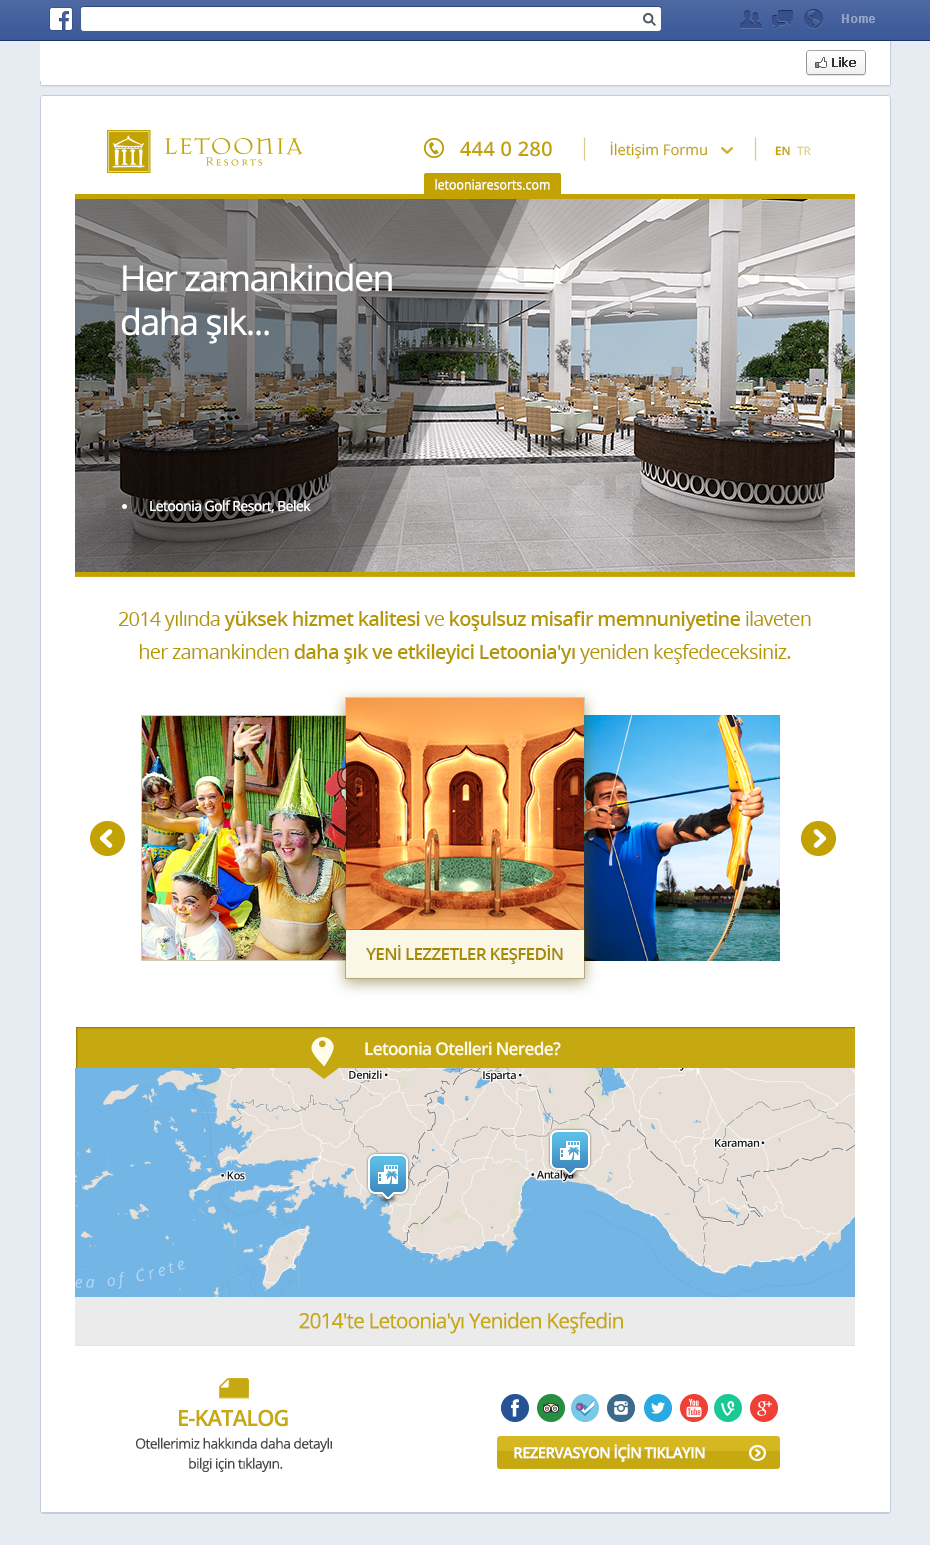 Letoonia Resorts hotel vacation Holiday slider tab app application map information